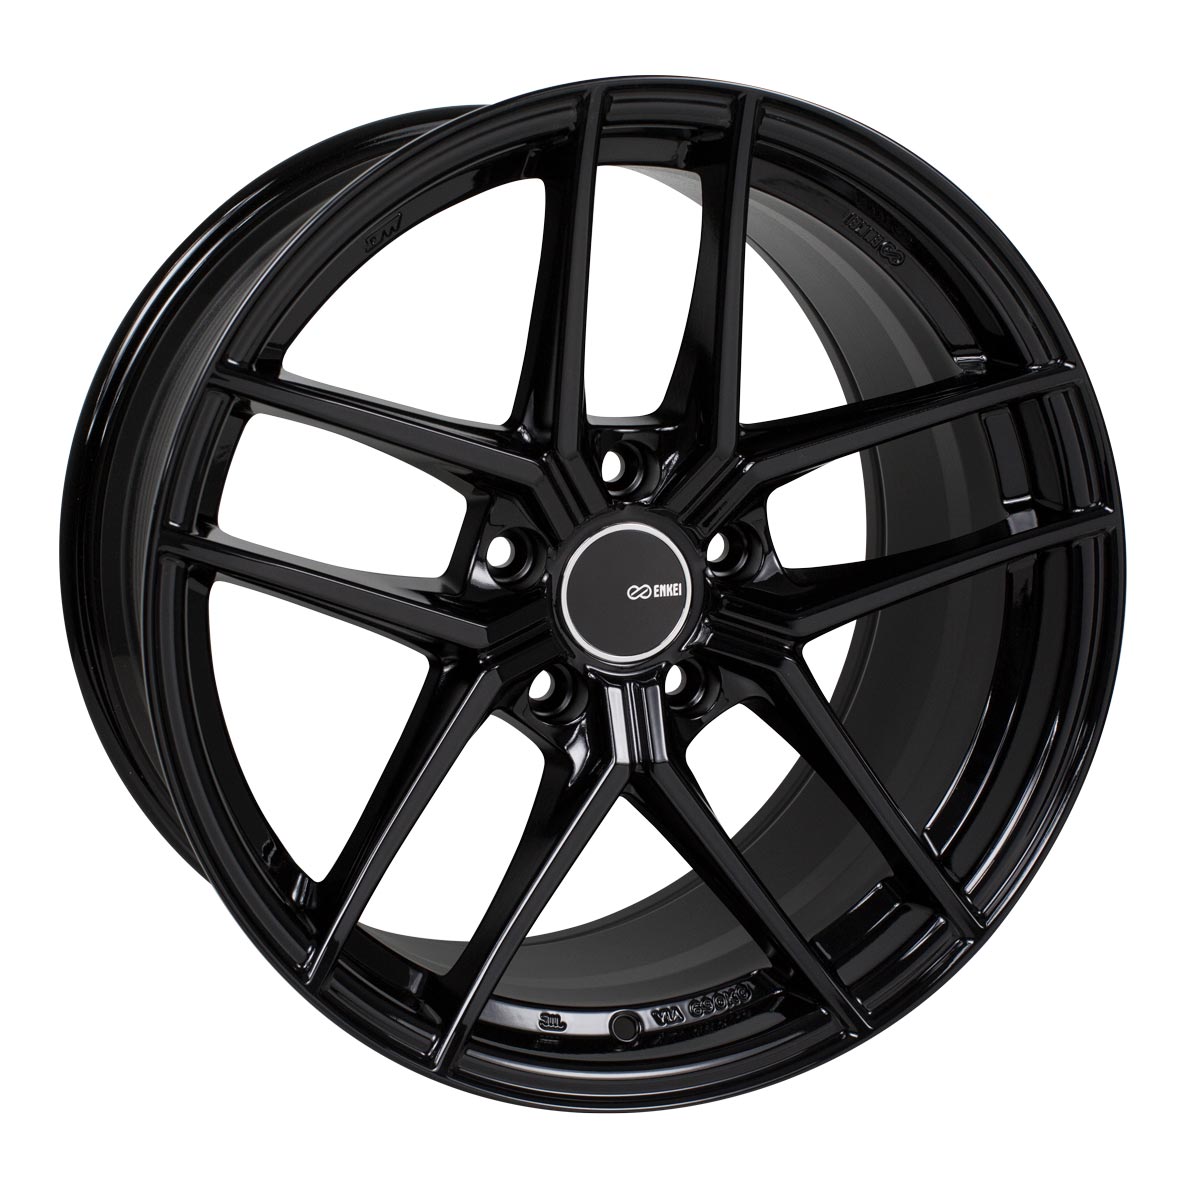 Enkei TY-5 Wheel Gloss Black 19x8.5 +42 5x112 498-985-4442BK